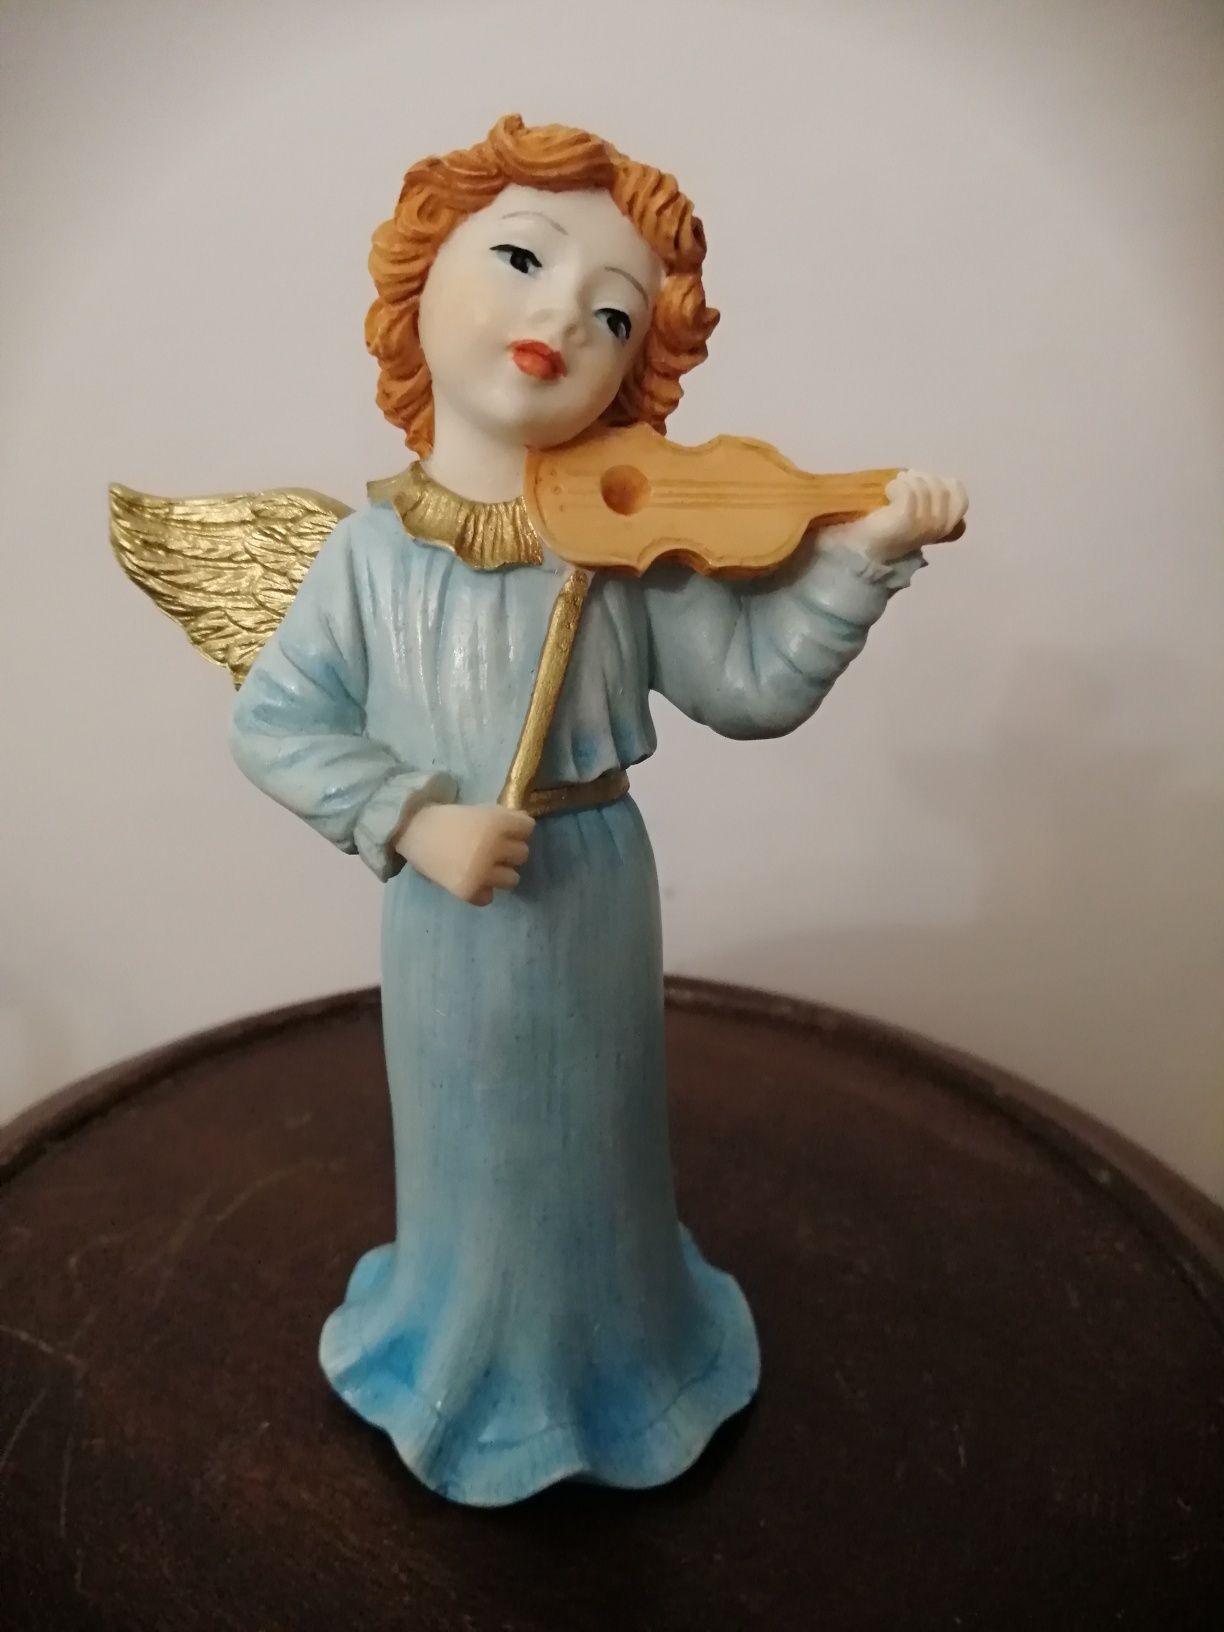 Série de 4 anjos músicos - 13 cm